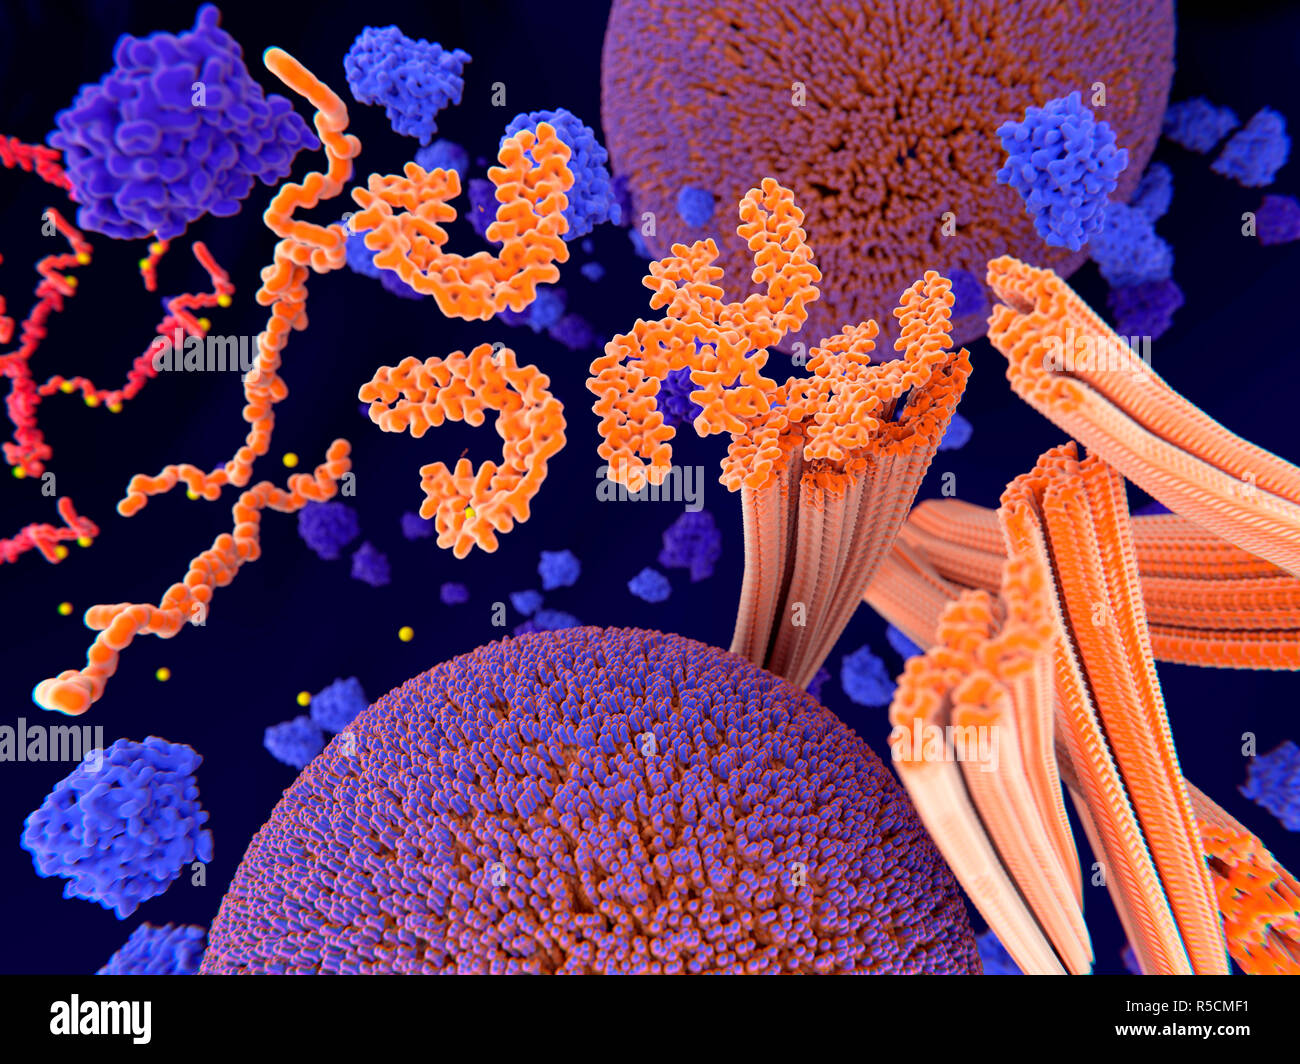 La proteina tau nella malattia di Alzheimer, illustrazione. Fosforilazione patologica (giallo) di proteine Tau (arancione) mediante chinasi (blu-viola) influenzare le cellule nervose in quello che è chiamato un grovigli neurofibrillari. Questa illustrazione mostra il trasporto di vescicole sinaptiche (rosso-blu sfere) essendo interrotto. Le proteine tau interessano anche microtubles (arancione cilindri). Un grovigli neurofibrillari consiste di anormali aggregati e le fibre insolubili della proteina tau. La proteina tau è un abbondante proteina neurale, le aggregazioni dei quali sono pensati per giocare un ruolo nella malattia di Alzheimer e altri disturbi neurali. Foto Stock